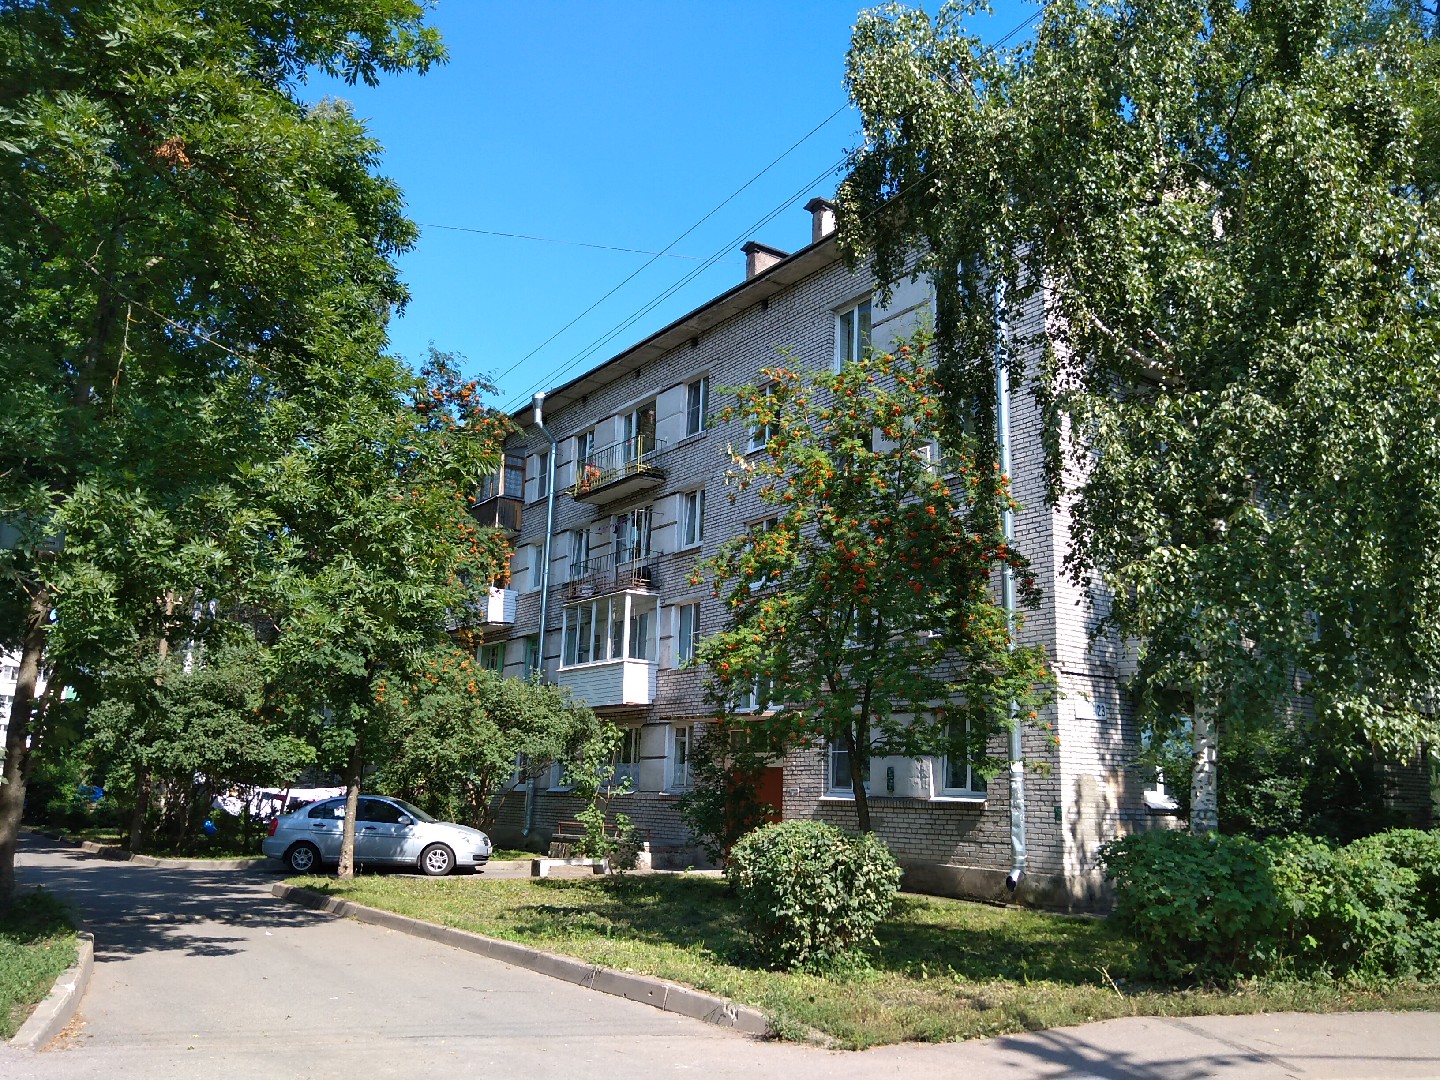 г. Санкт-Петербург, г. Павловск, ул. Гуммолосаровская, д. 23-фасад здания